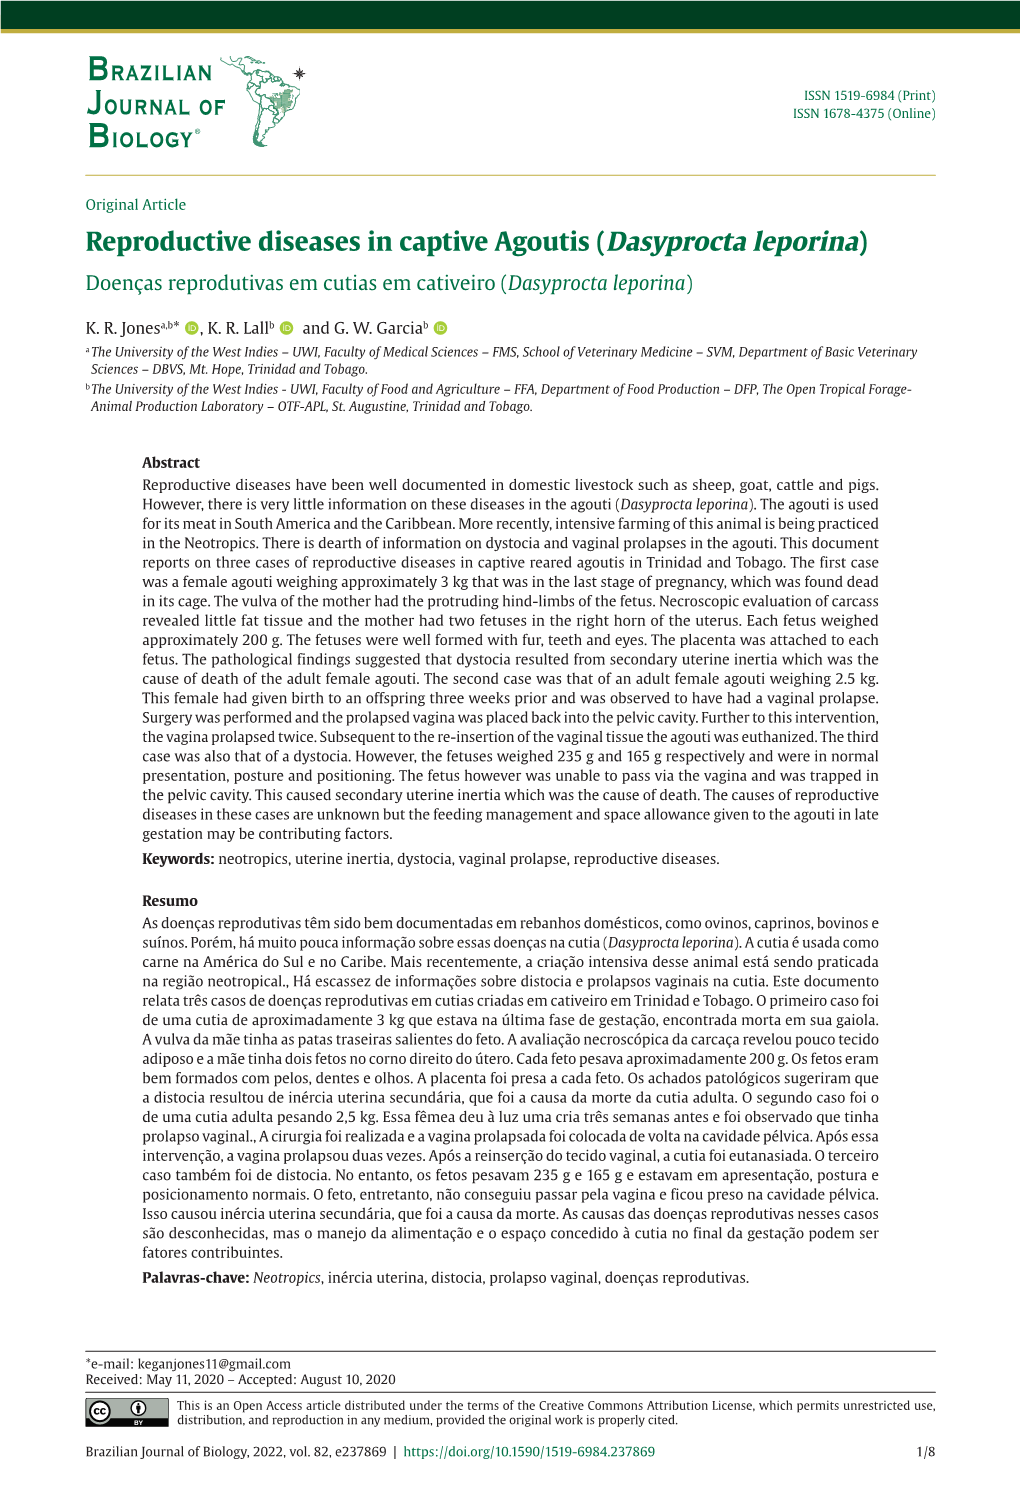 Reproductive Diseases in Captive Agoutis (Dasyprocta Leporina) Doenças Reprodutivas Em Cutias Em Cativeiro (Dasyprocta Leporina)